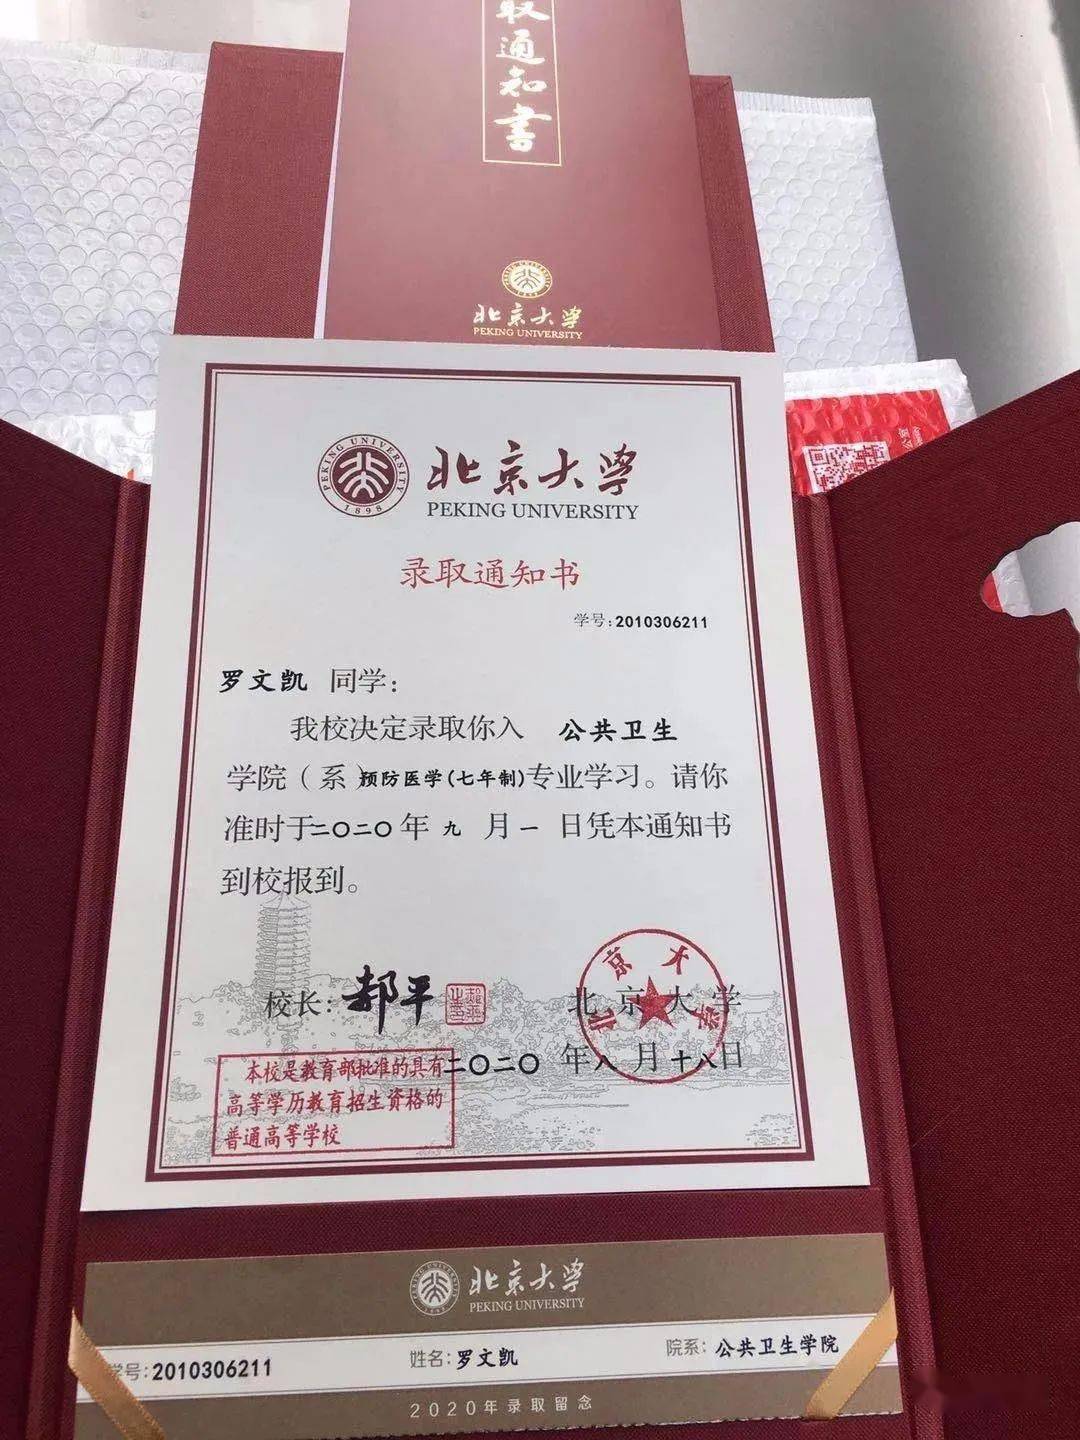 他与家人收到了一份沉甸甸的邮件快递,里面是北京大学的录取通知书!